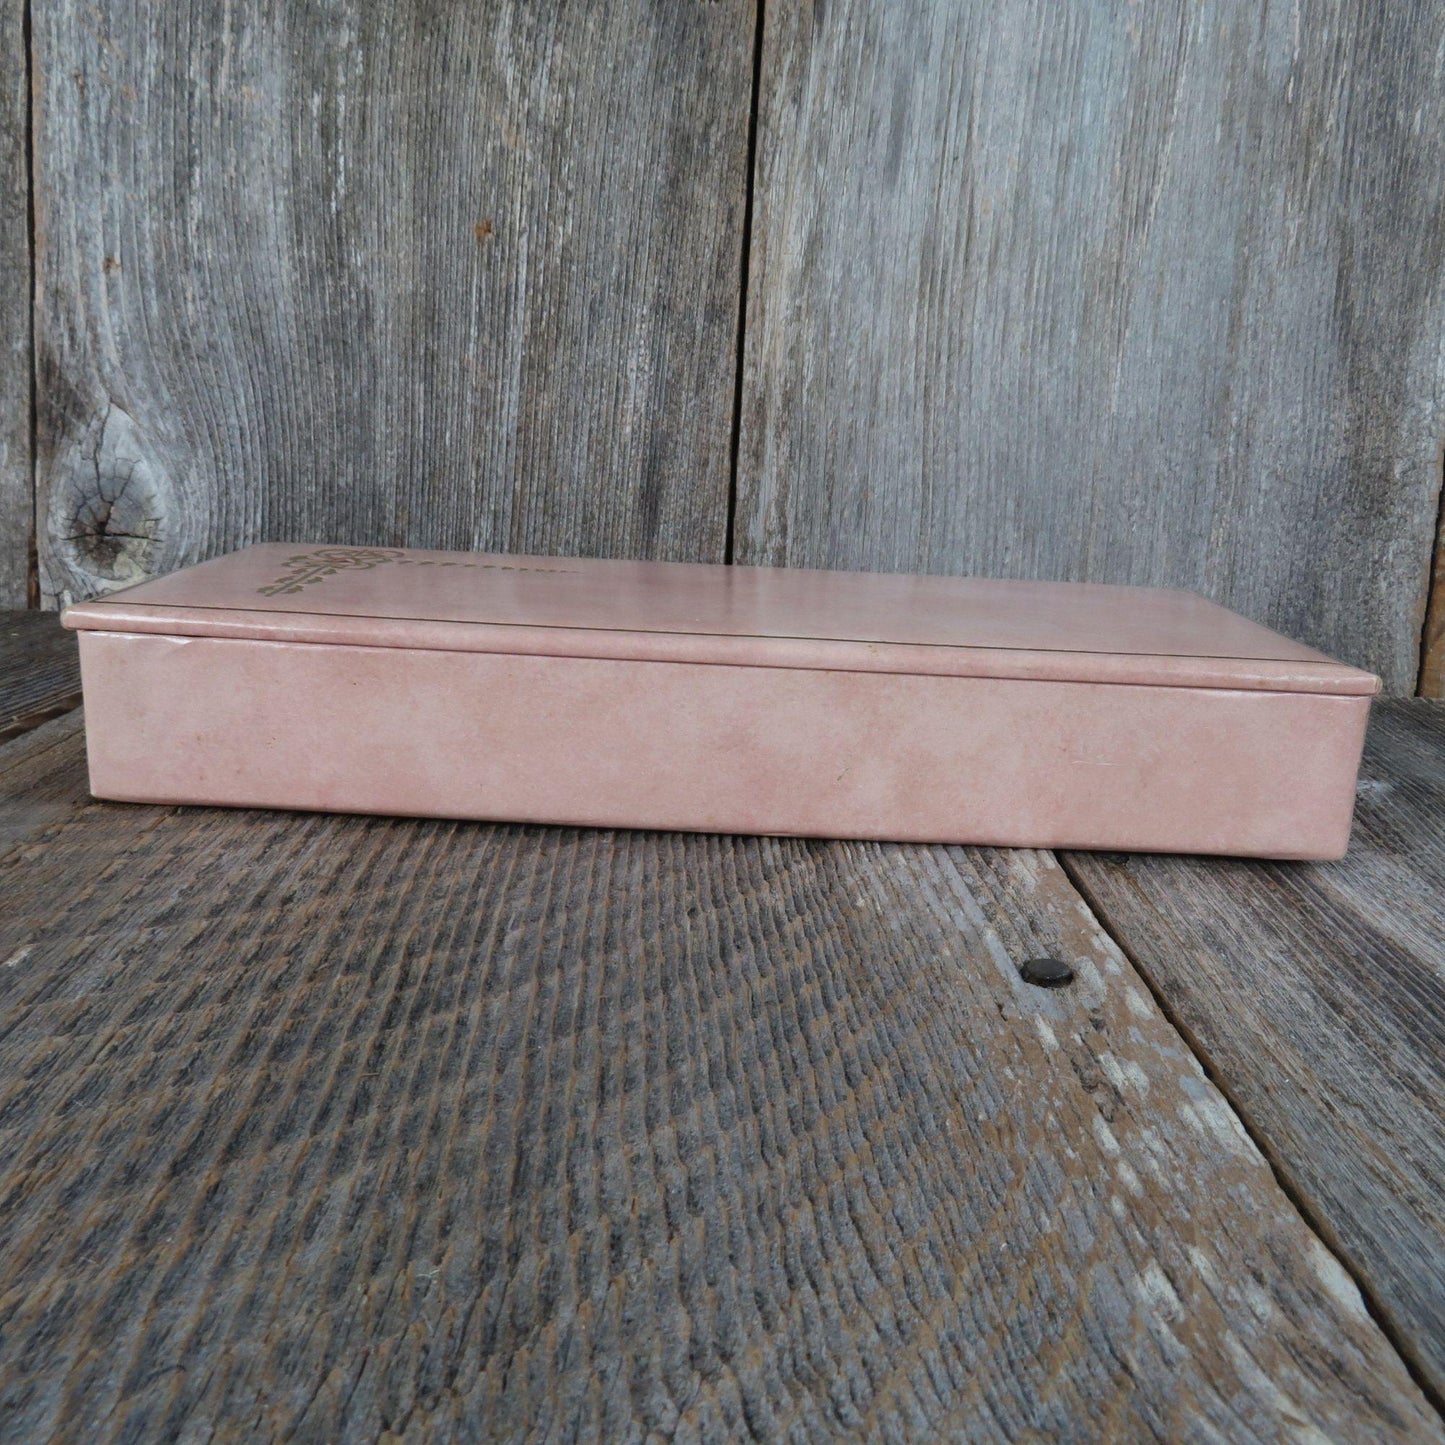 Vintage Jewelry Ladies Glove Box Pink Cardboard Vanity Gold Embellished Mid Century